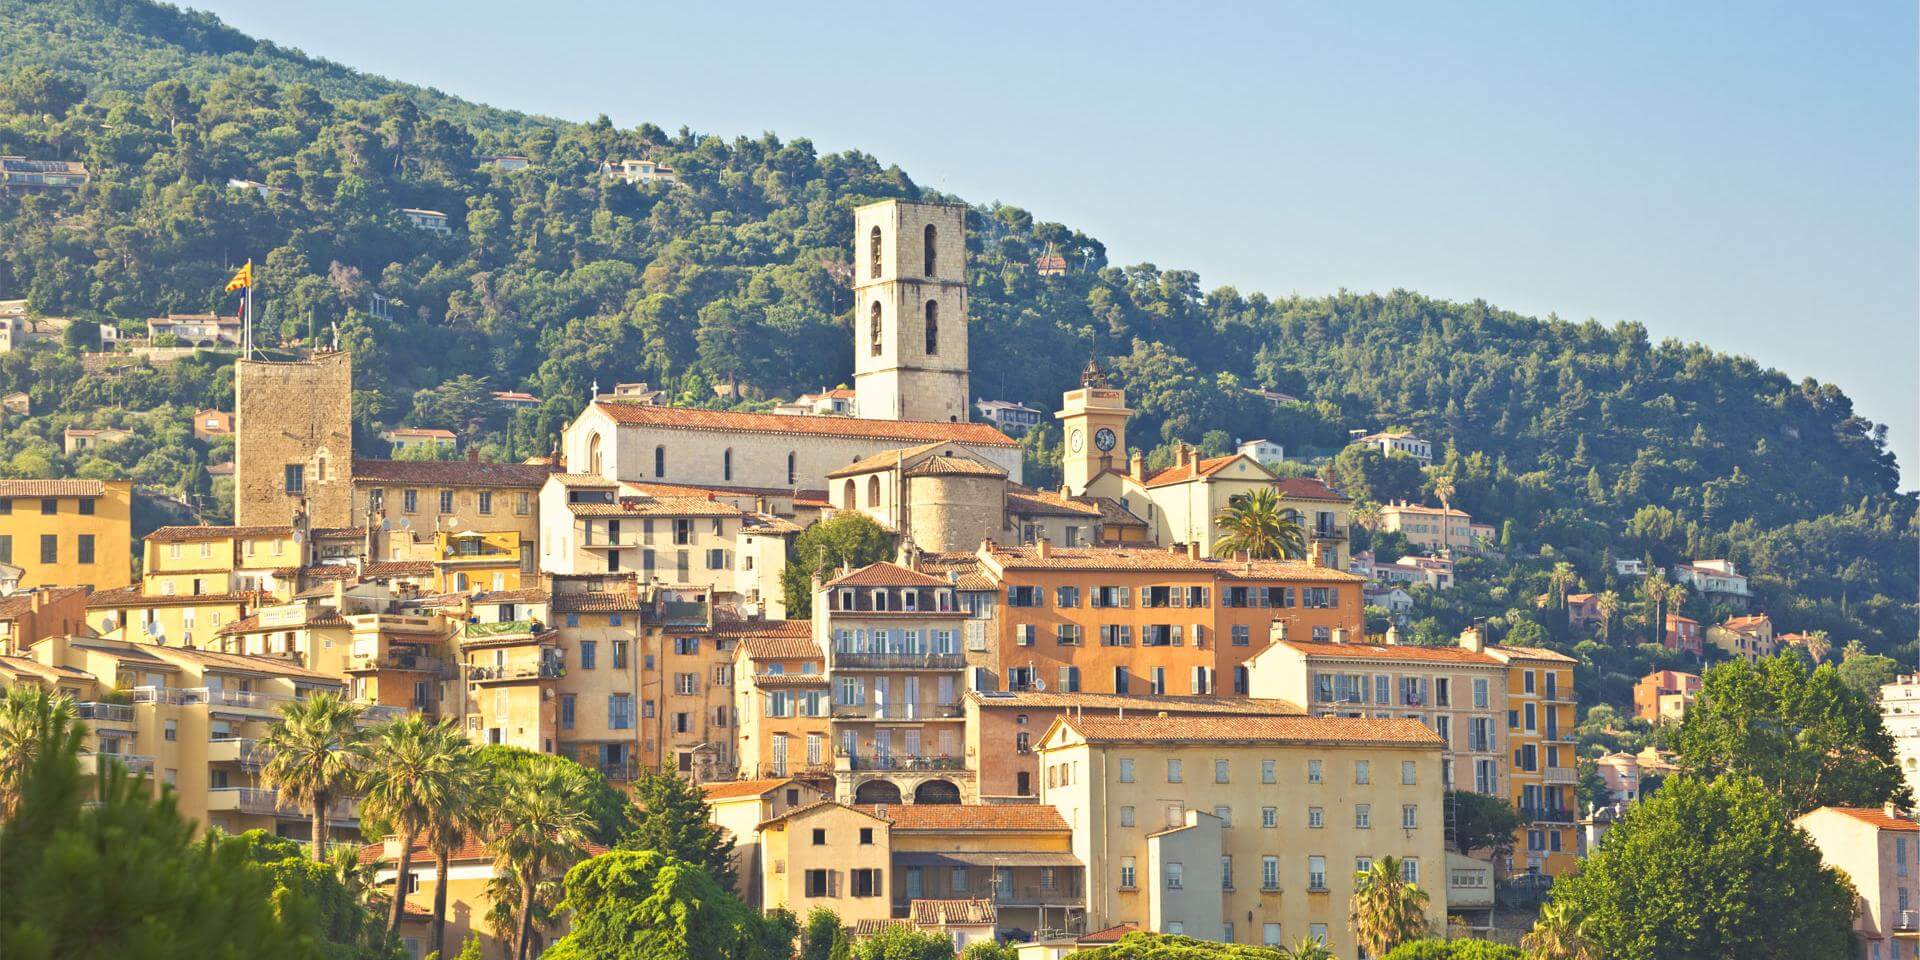 La ville de Grasse, la capitale des Parfums ©Destination Côte d'Azur France